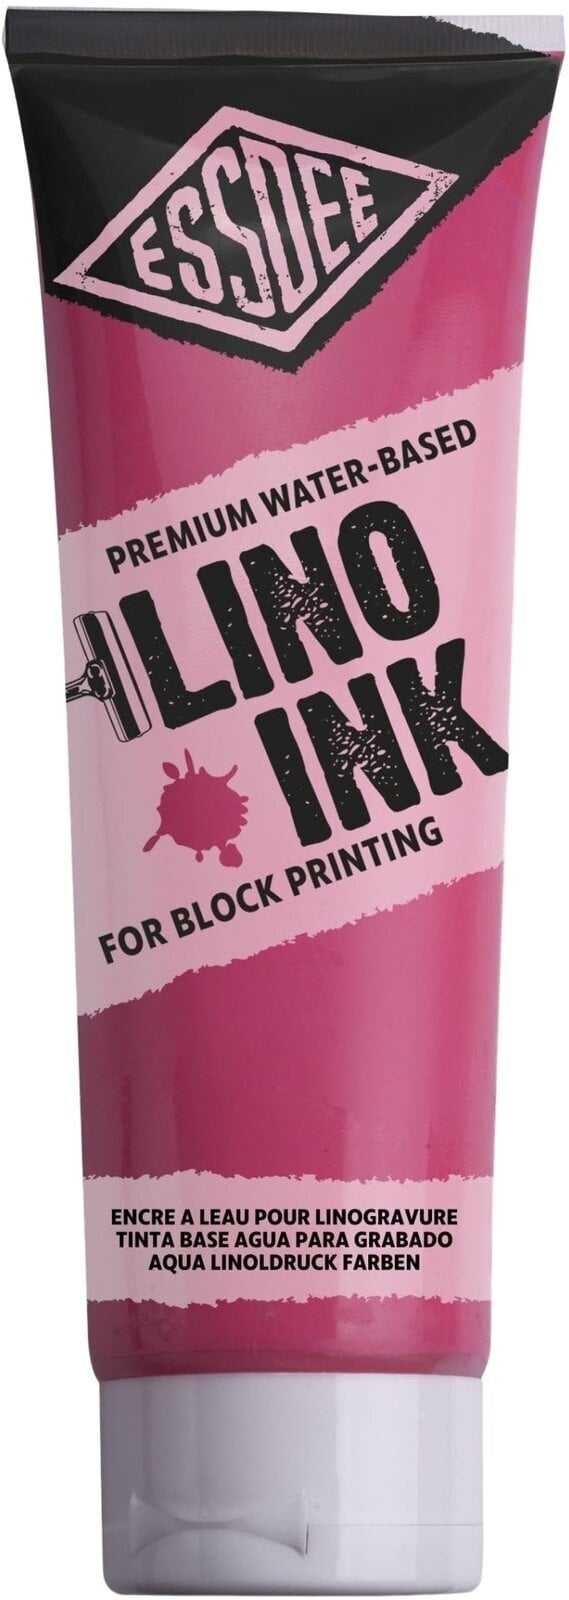 Boja za linorez Essdee Block Printing Ink Boja za linorez Fluorescent Red 300 ml